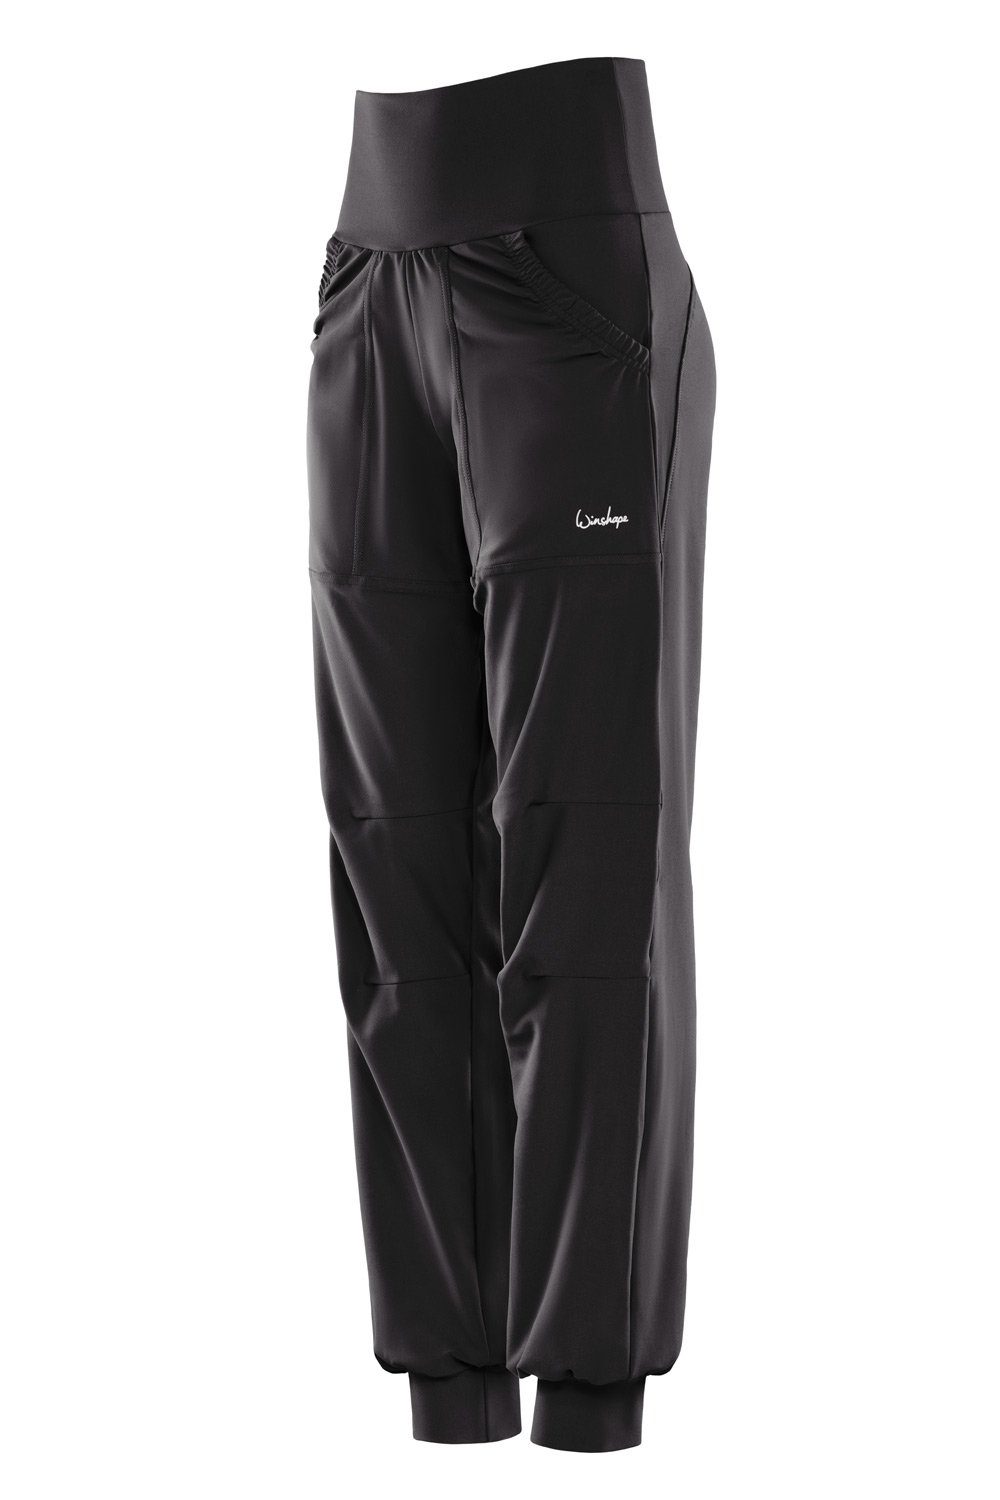 Winshape Sportbroek Functional Comfort Leisure Time Trousers LEI101C